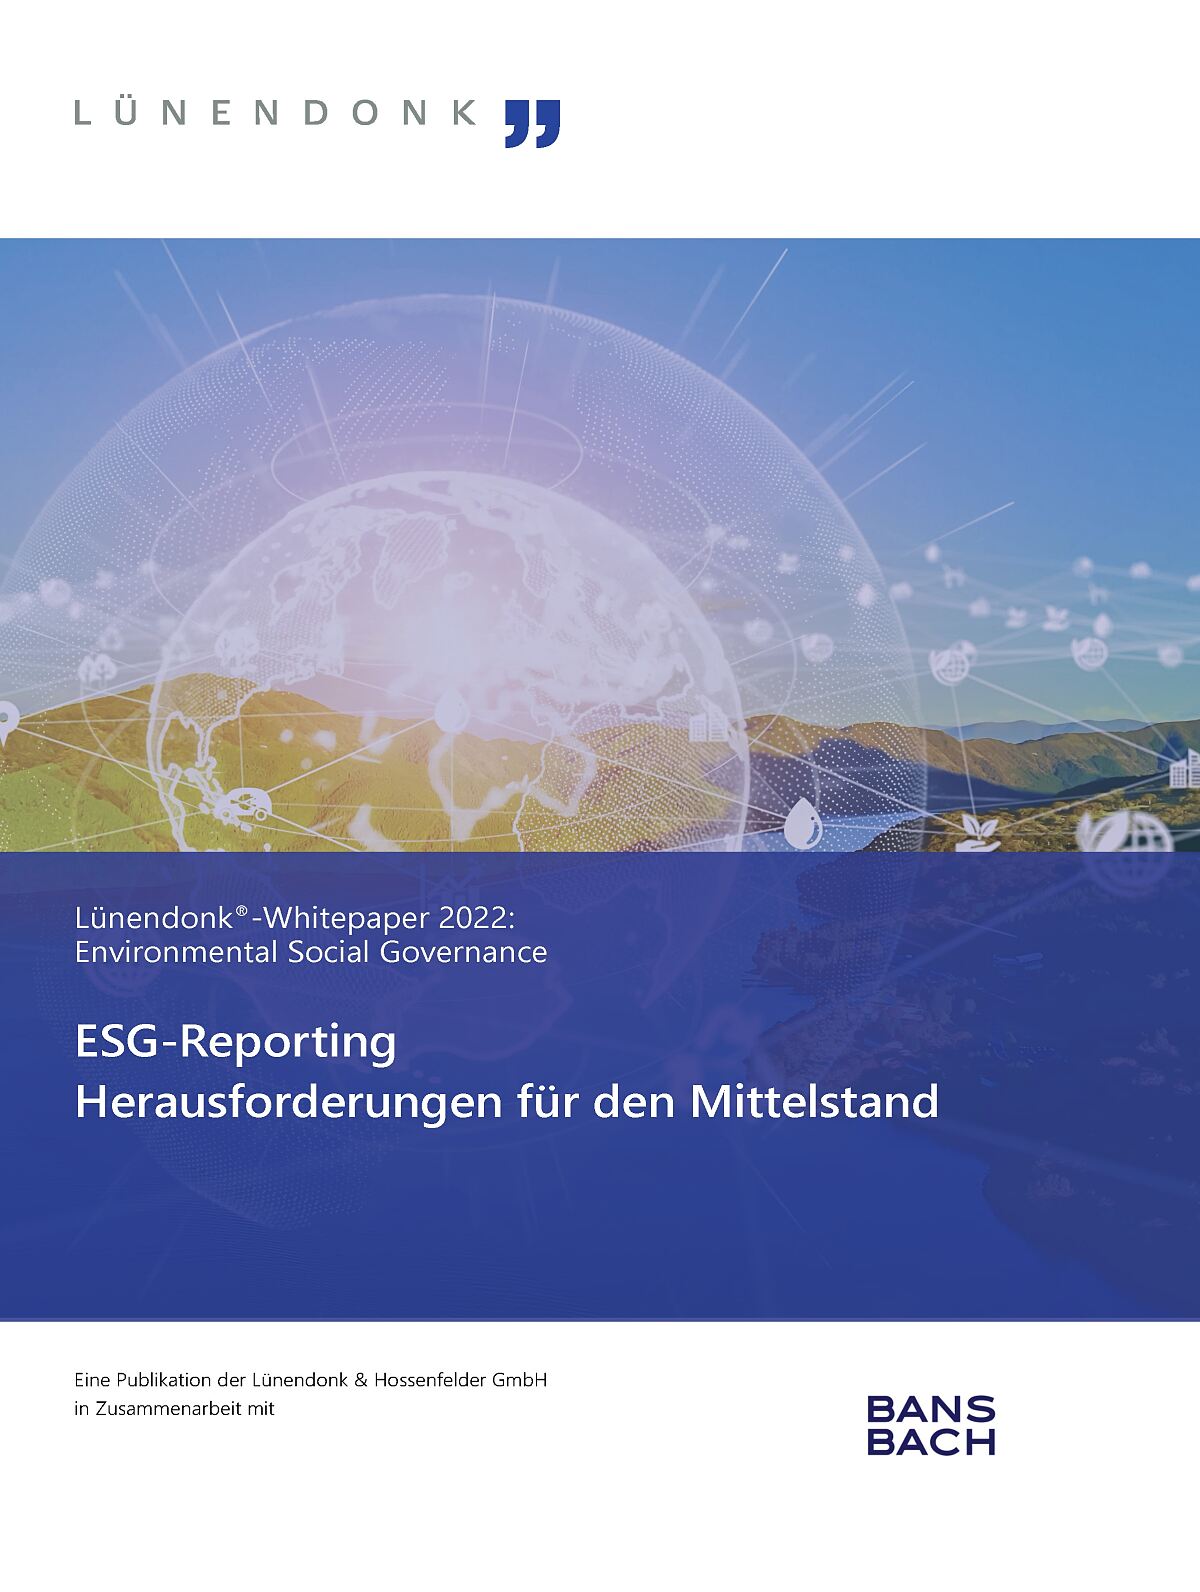 ESG-Reporting – Herausforderungen für den Mittelstand